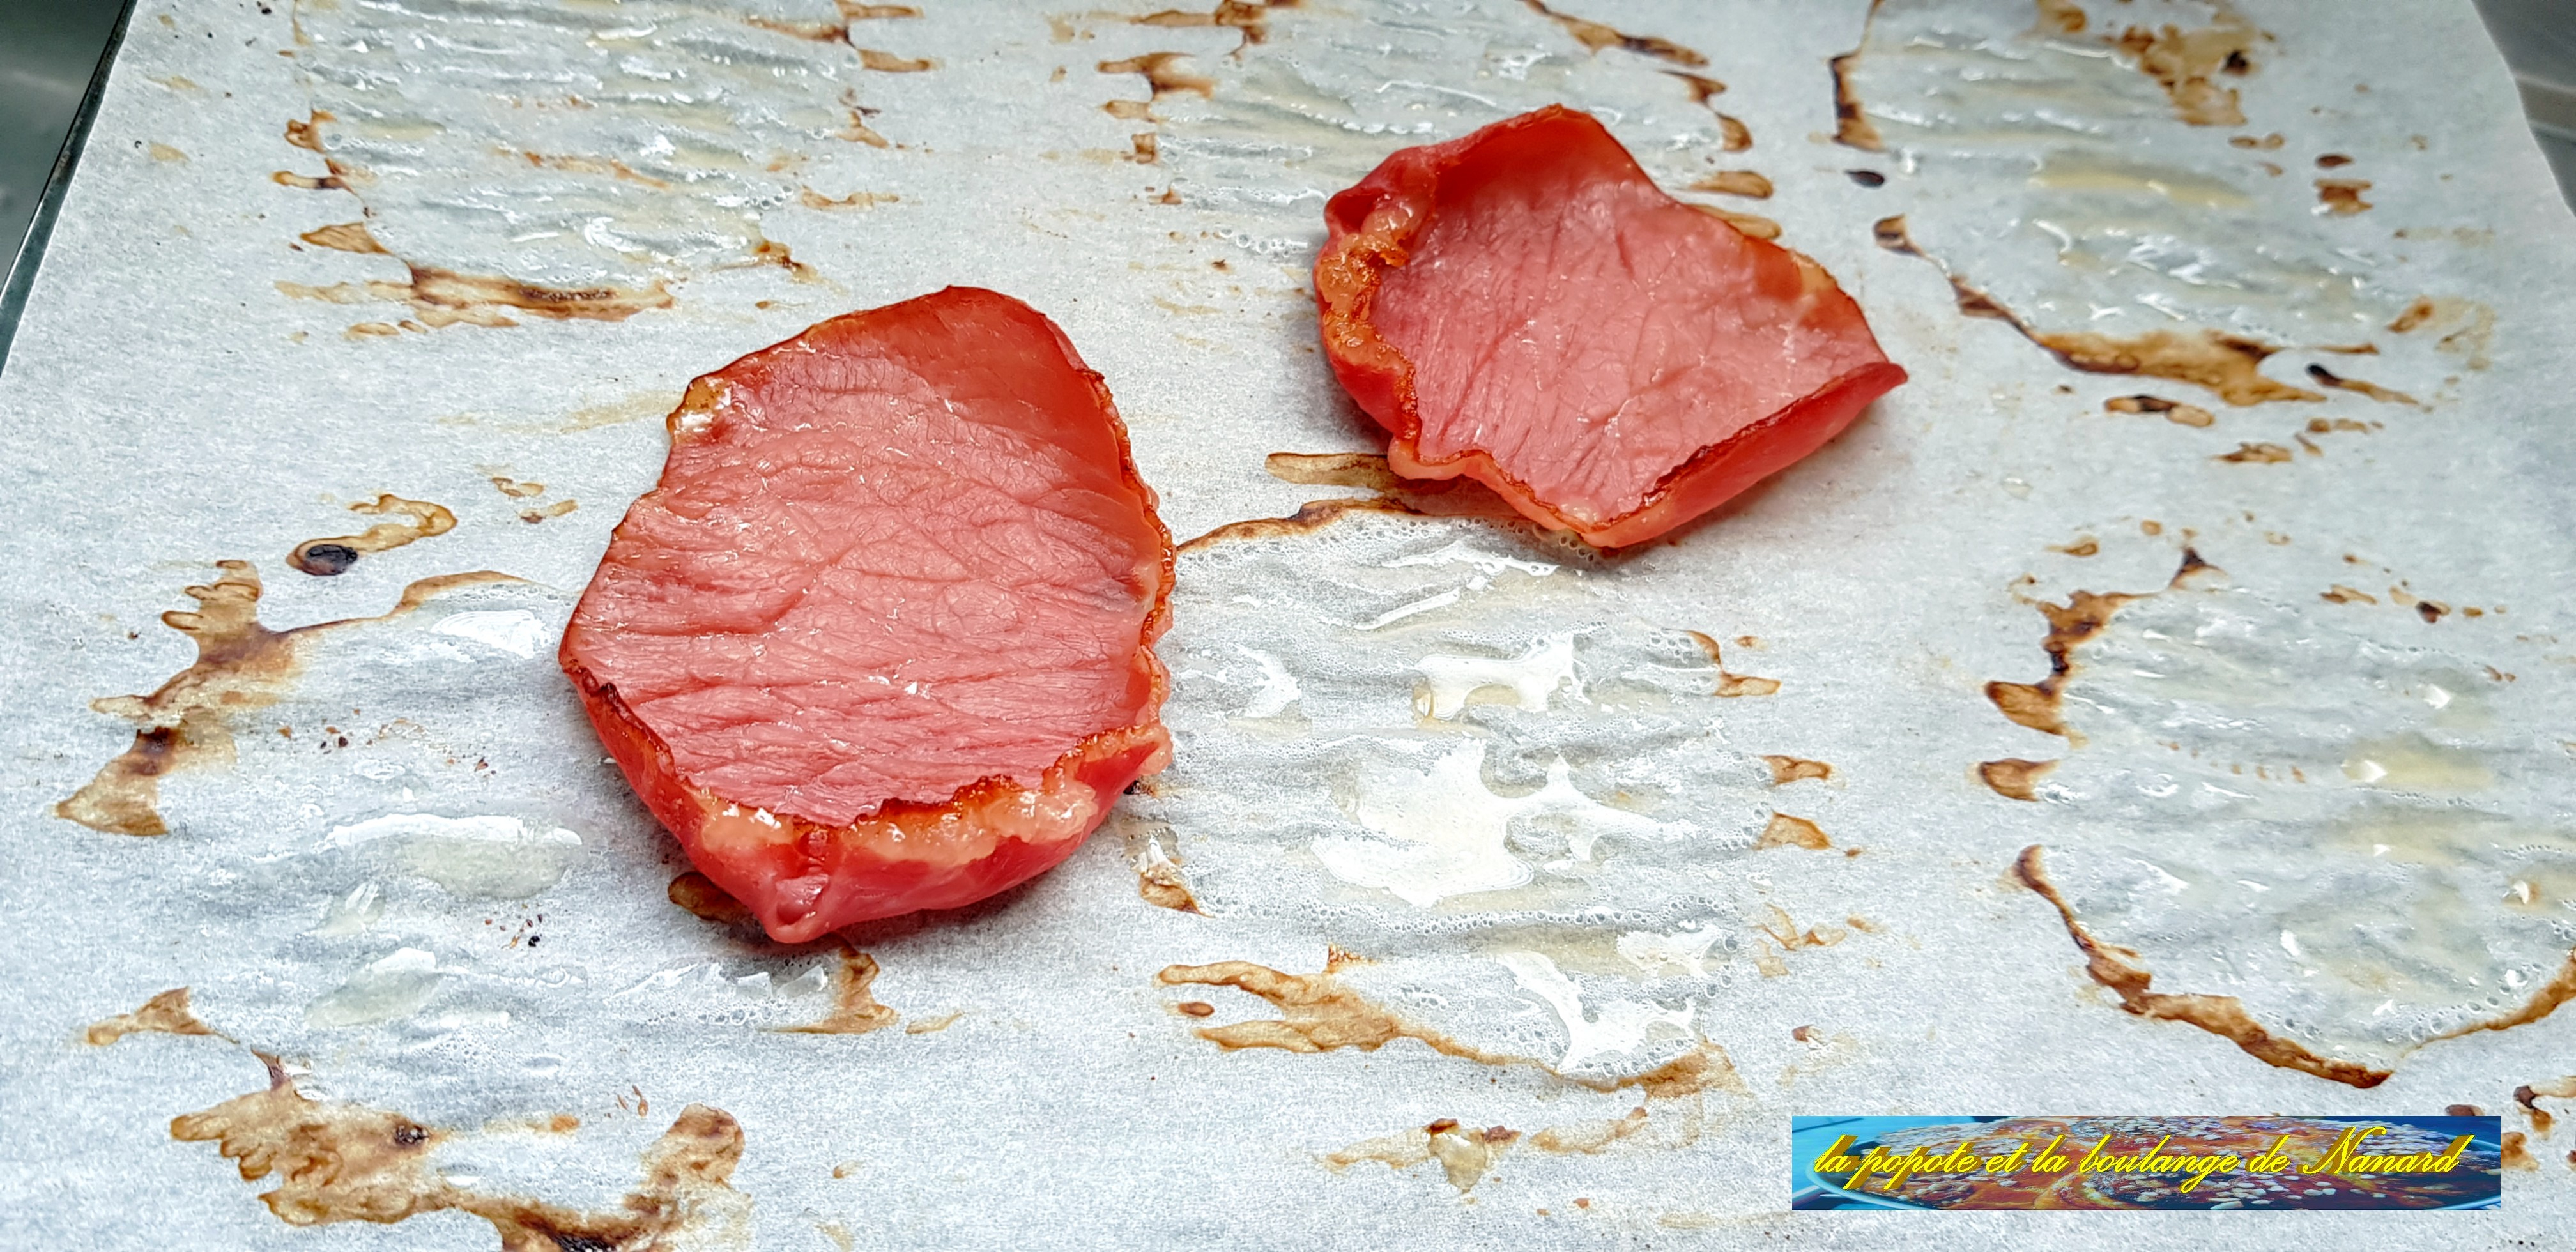 Griller le bacon 8 minutes à 200°C